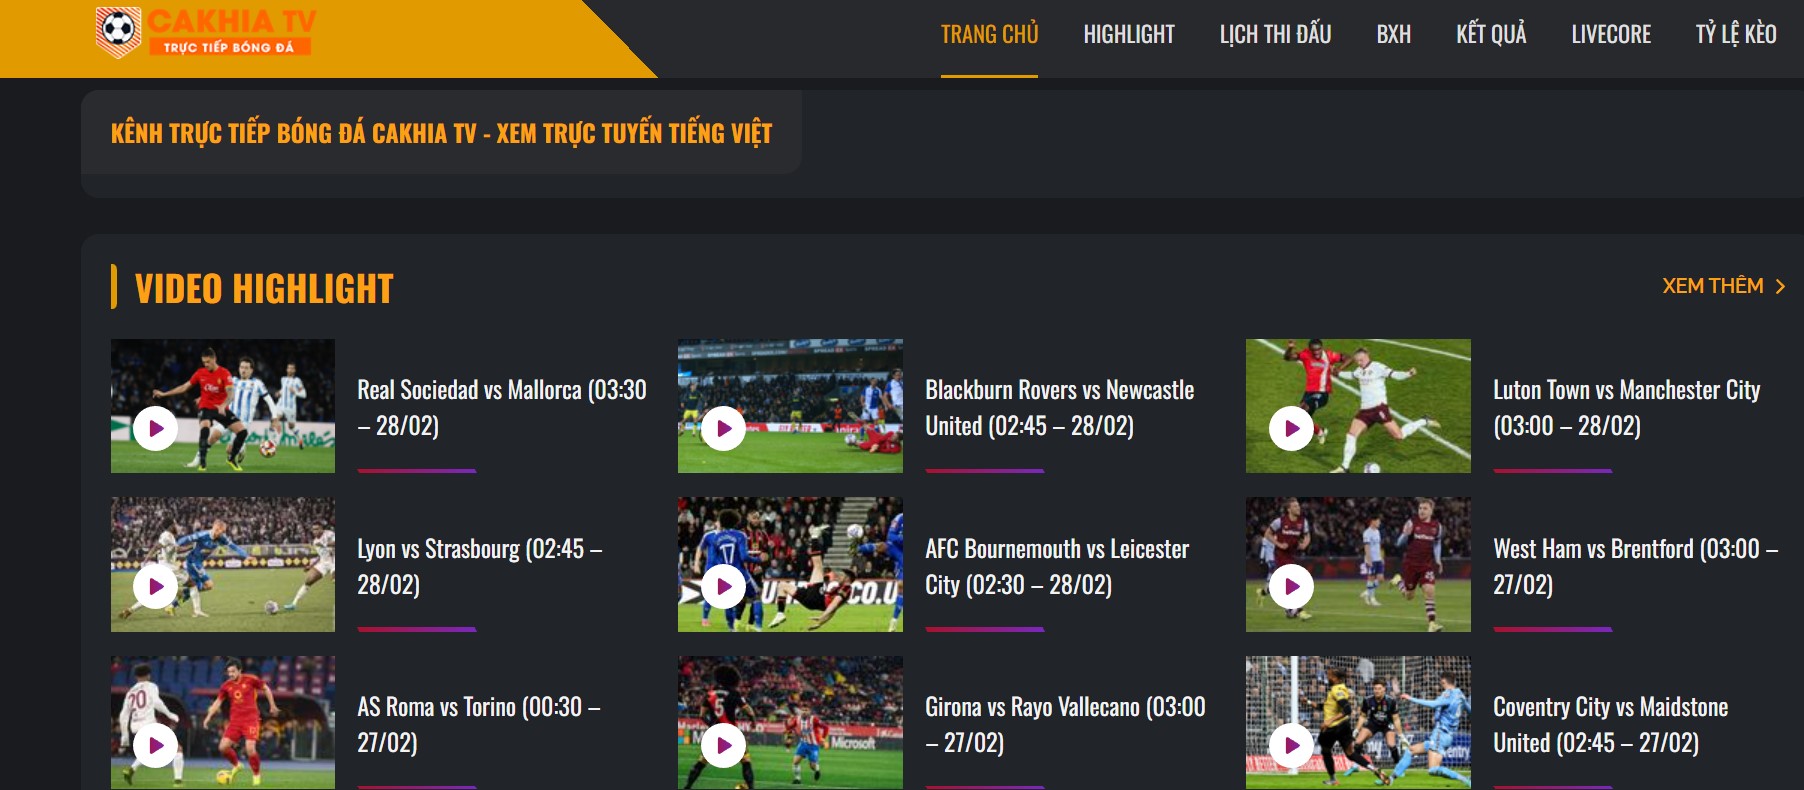 Tin tức bóng đá nhanh nhất được cập nhật mỗi ngày tại Cakhia TV